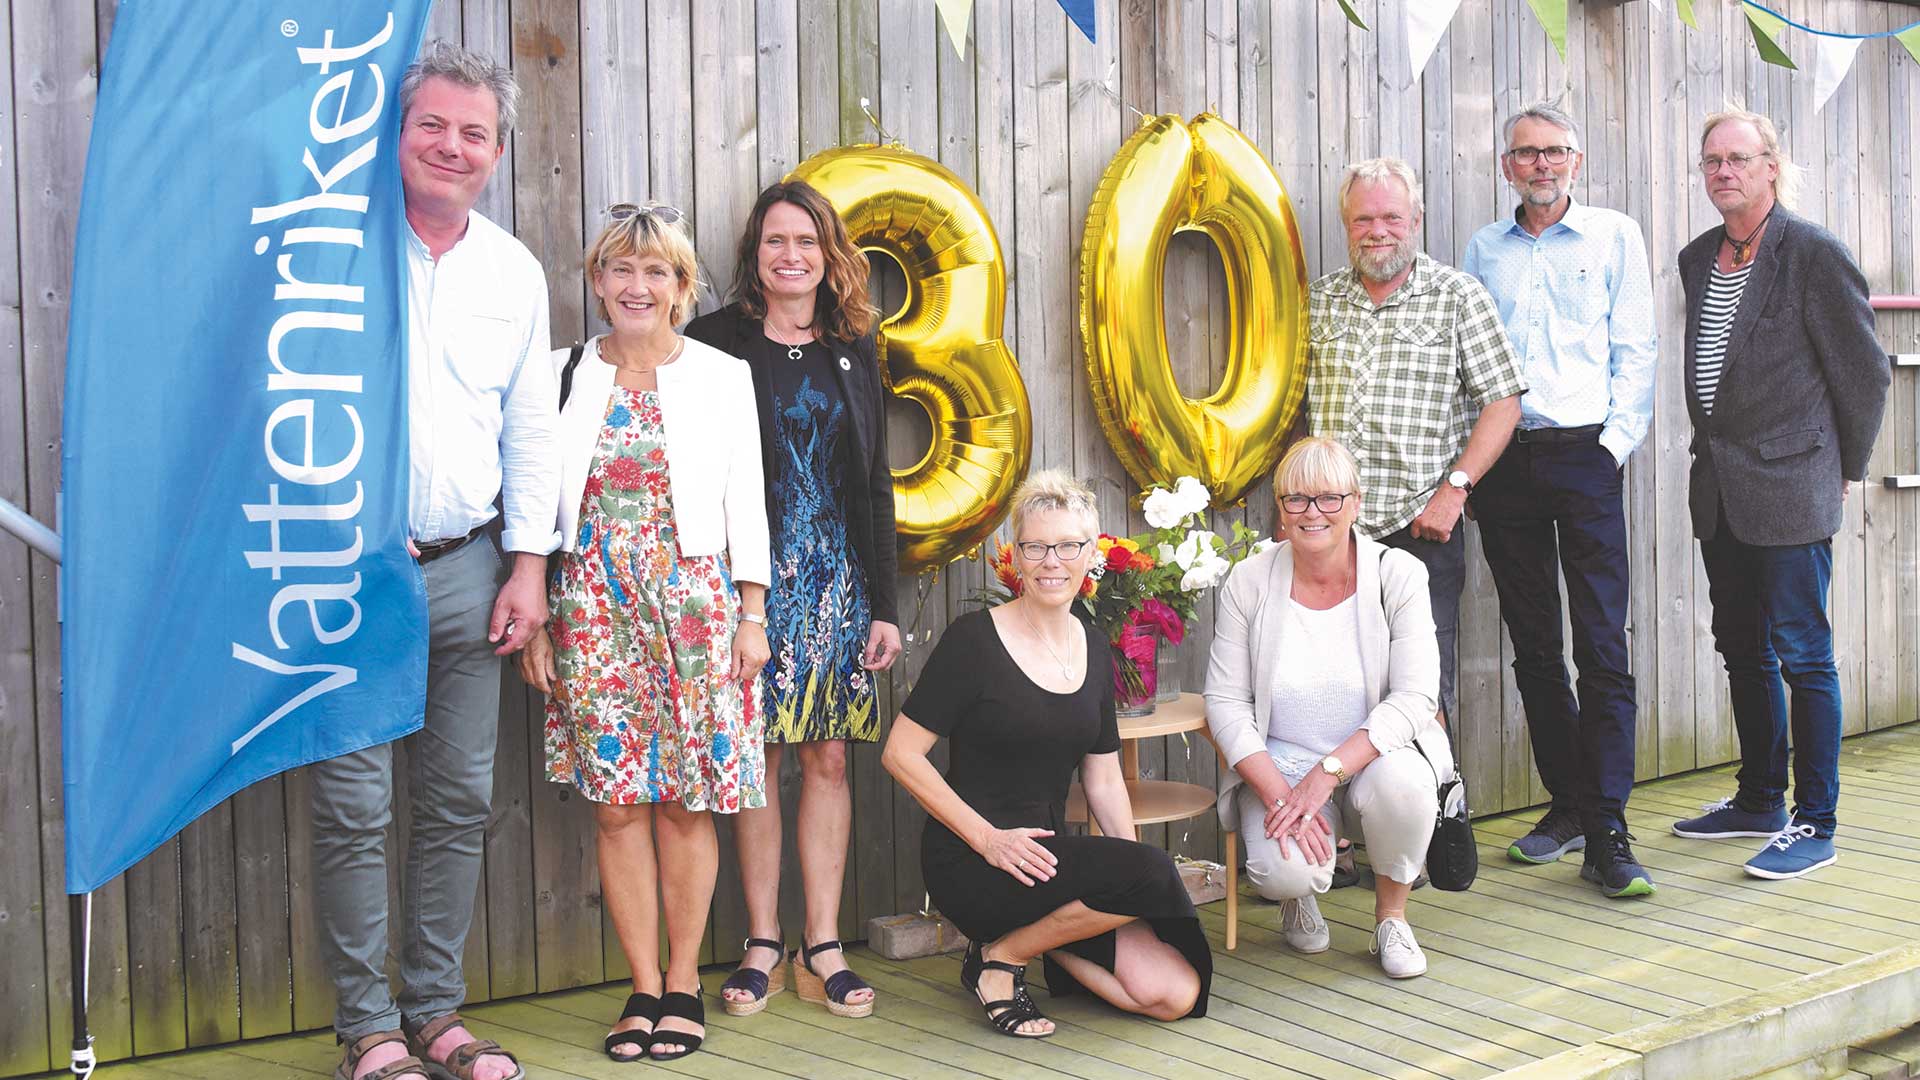 2019 firade verksamheten i Vattenriket 30 år med tillbakablickar och framtidstro i redet.